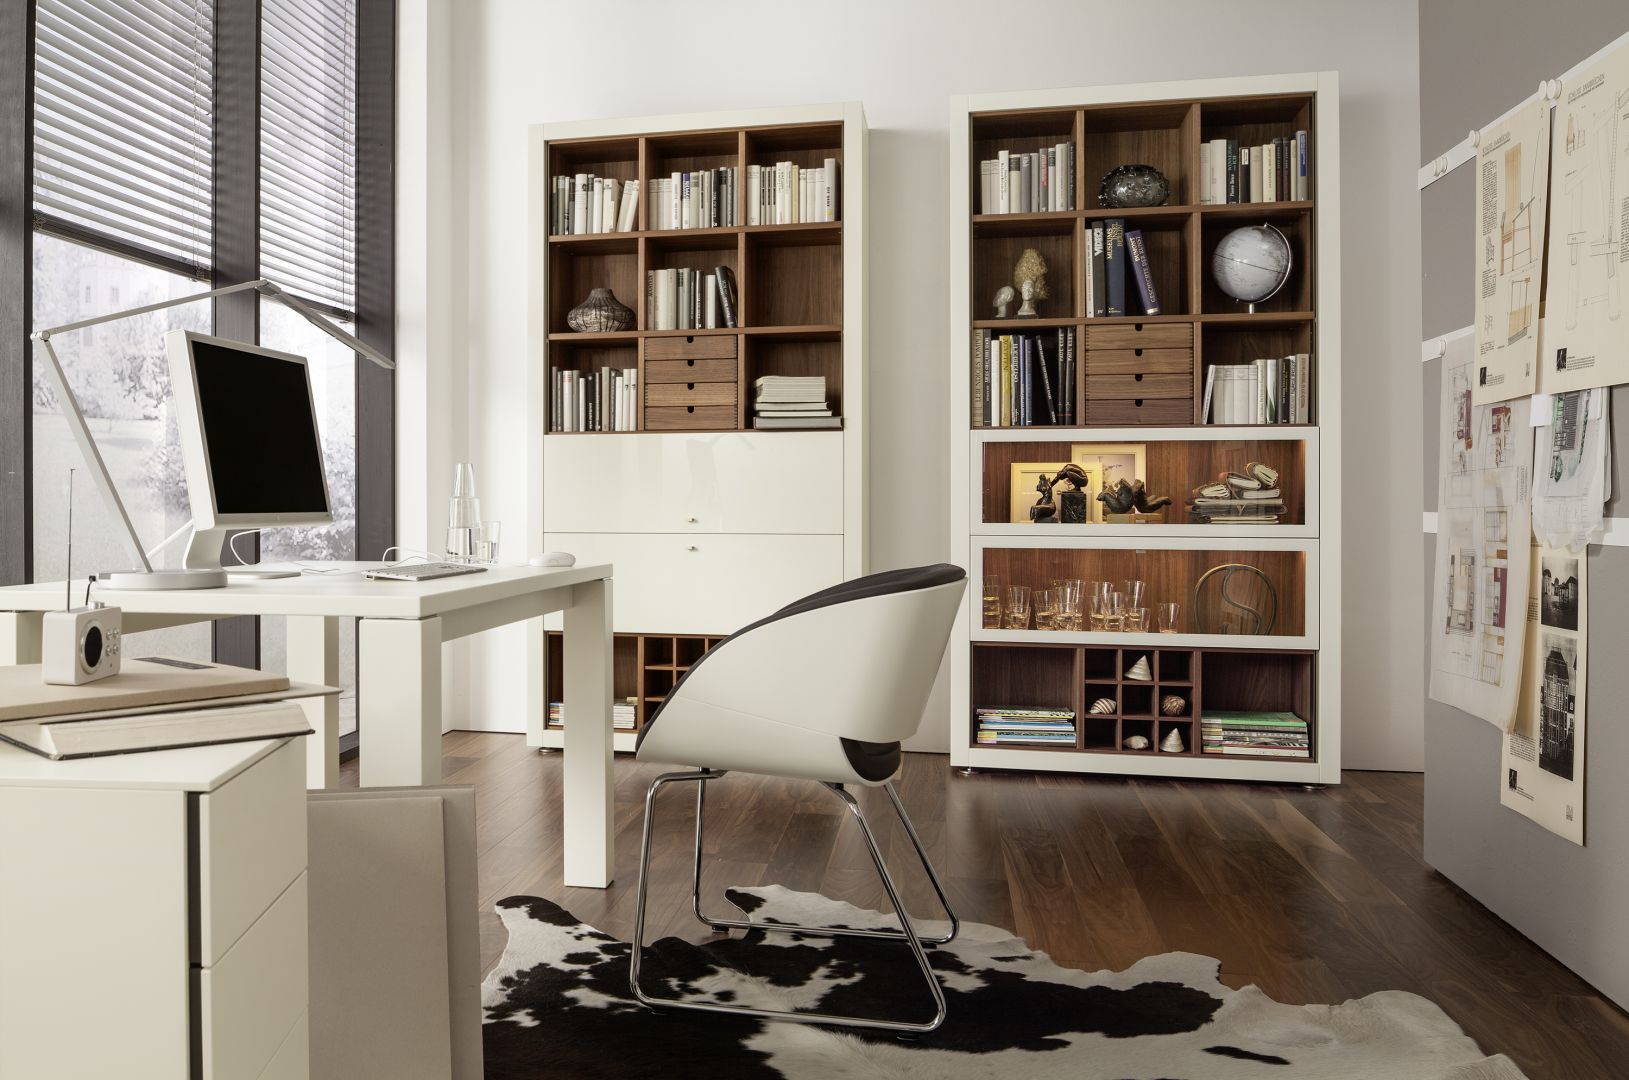 Biurko Xelo przeznaczone jest do domowego biura. Charakteryzuje się prostą formą, a szeroki blat zapewnia komfort pracy. Fot. Huelsta